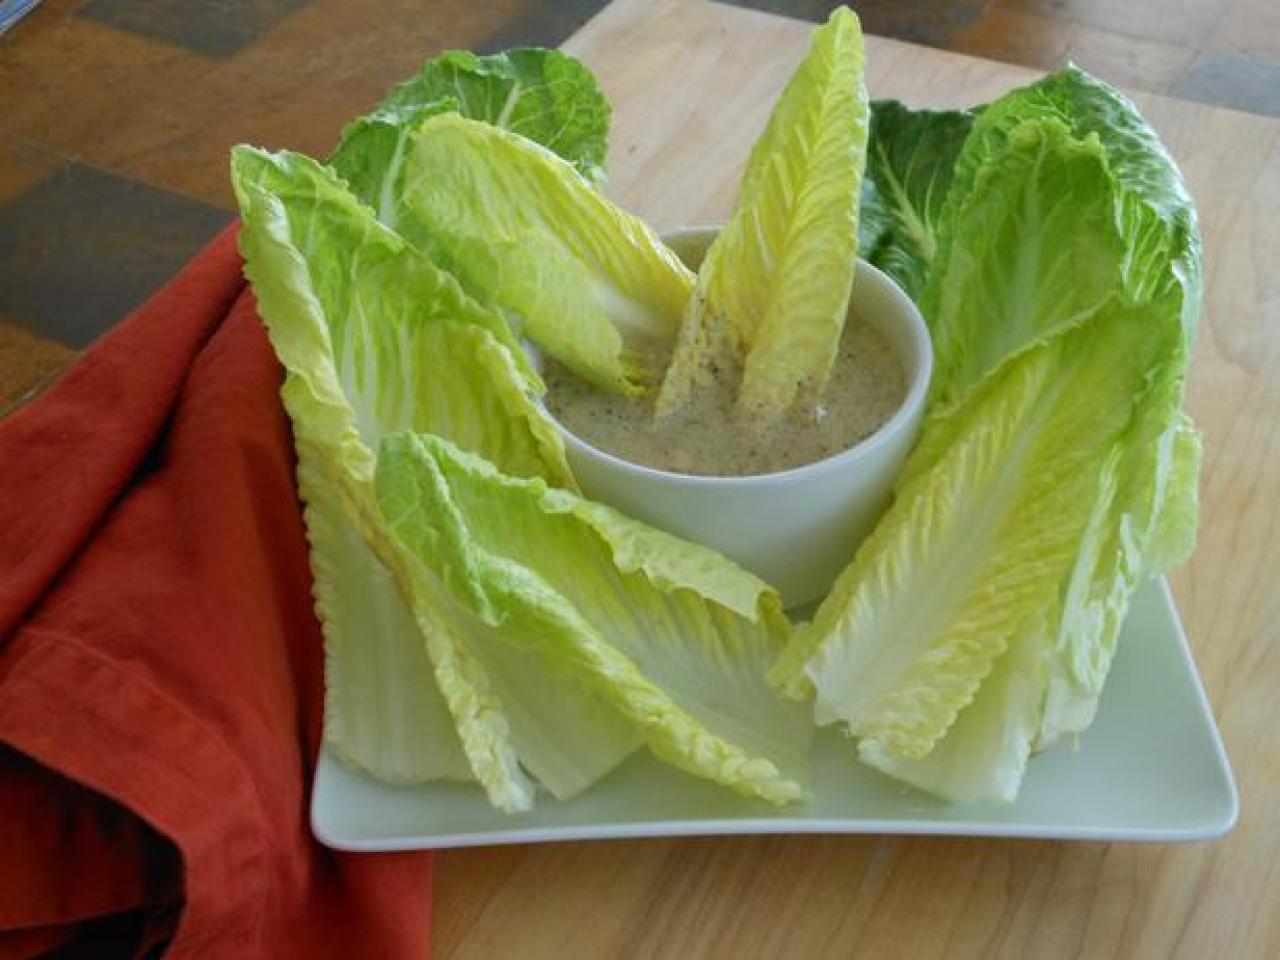 Caesar salad can be satiating